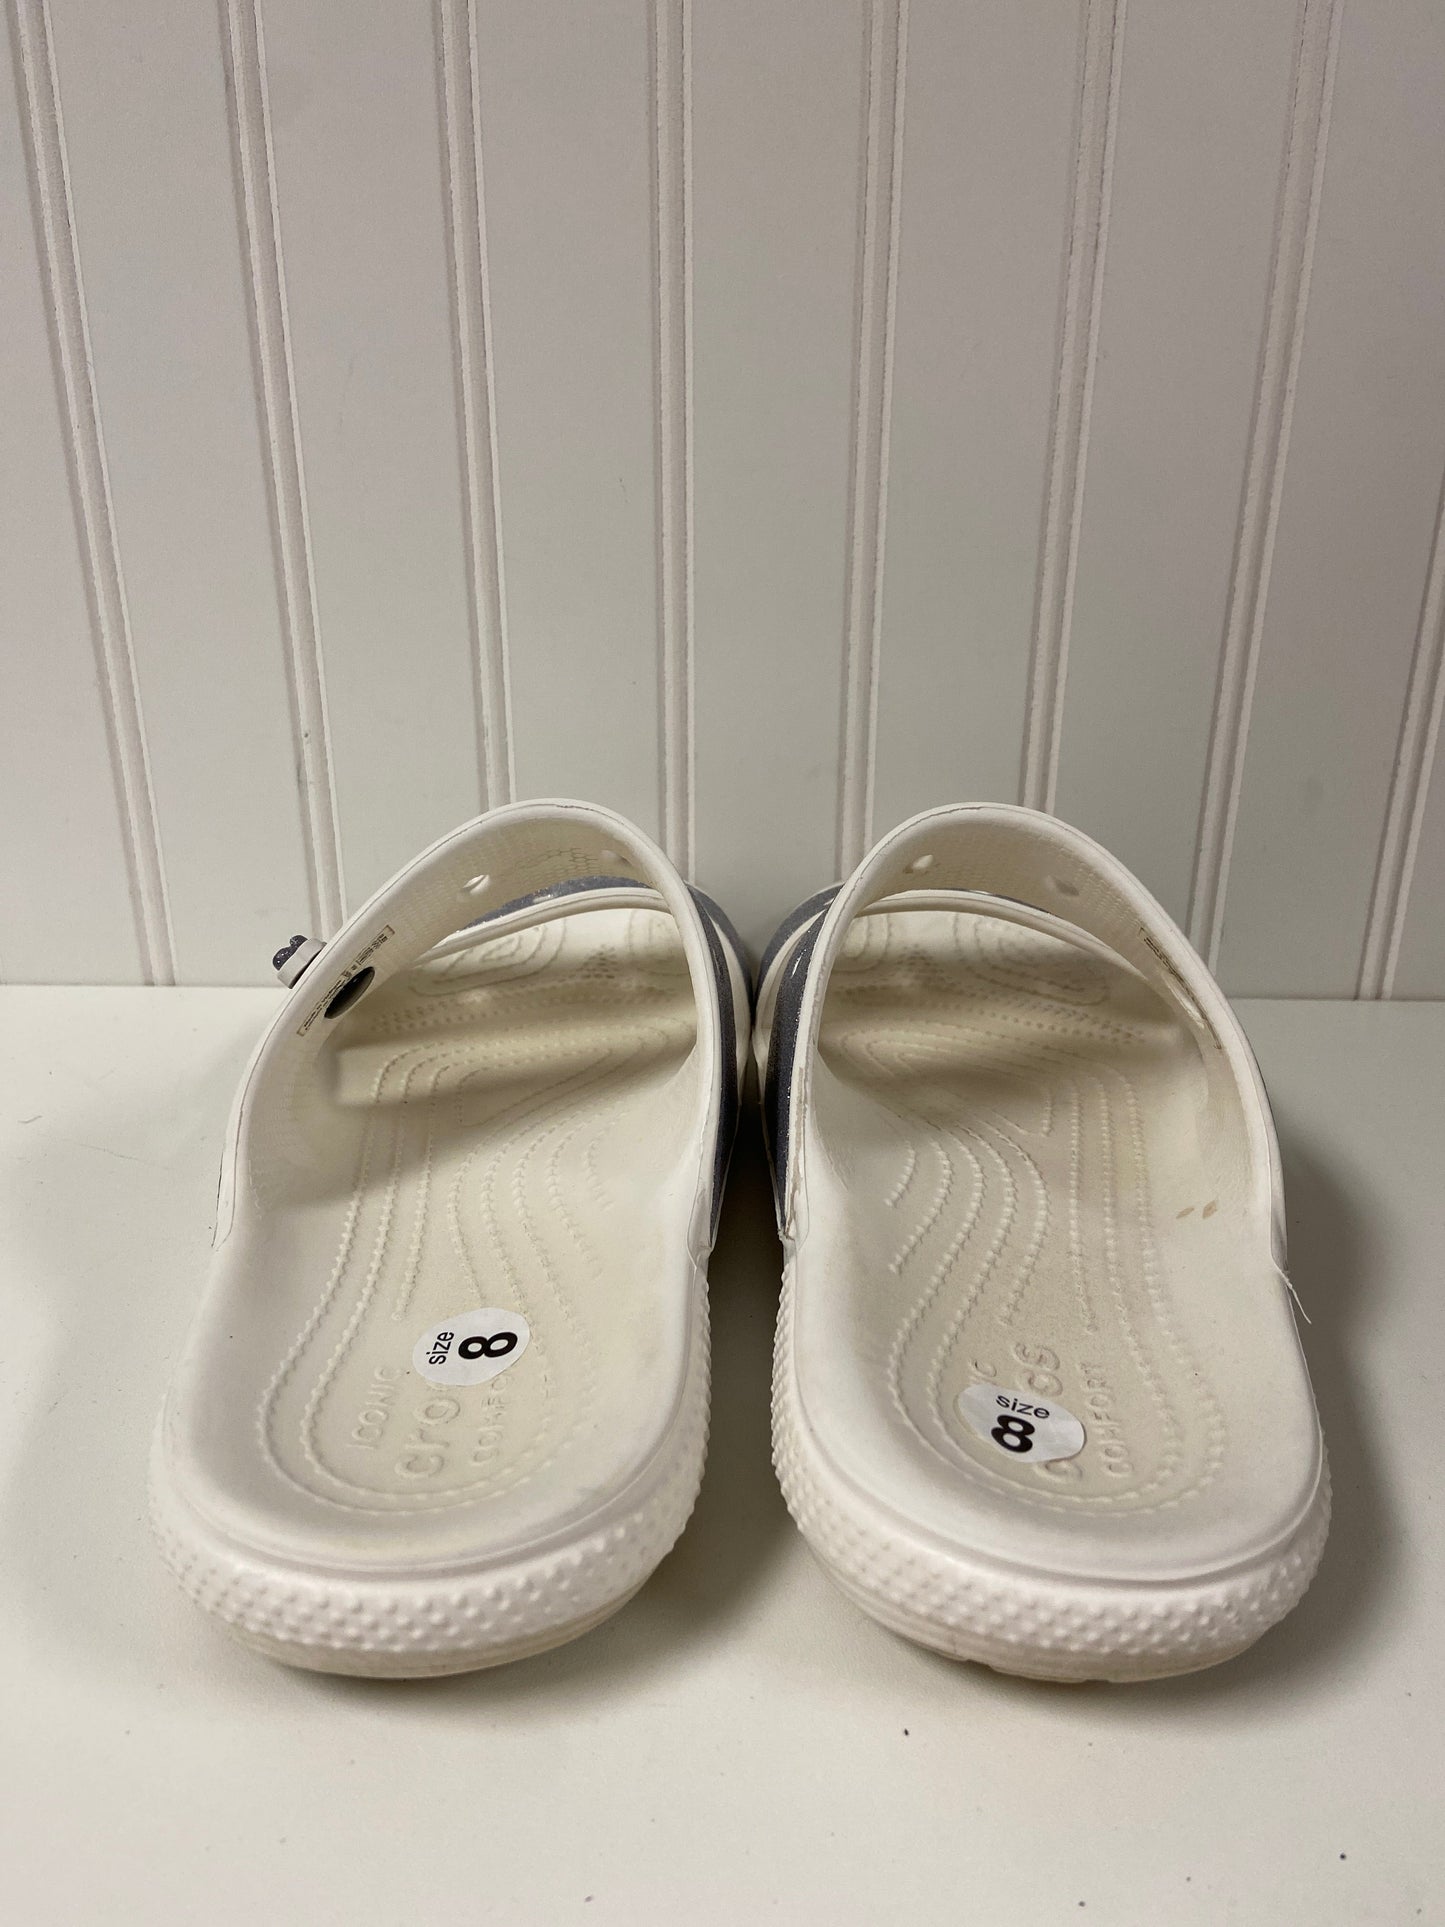 White Sandals Flats Crocs, Size 8